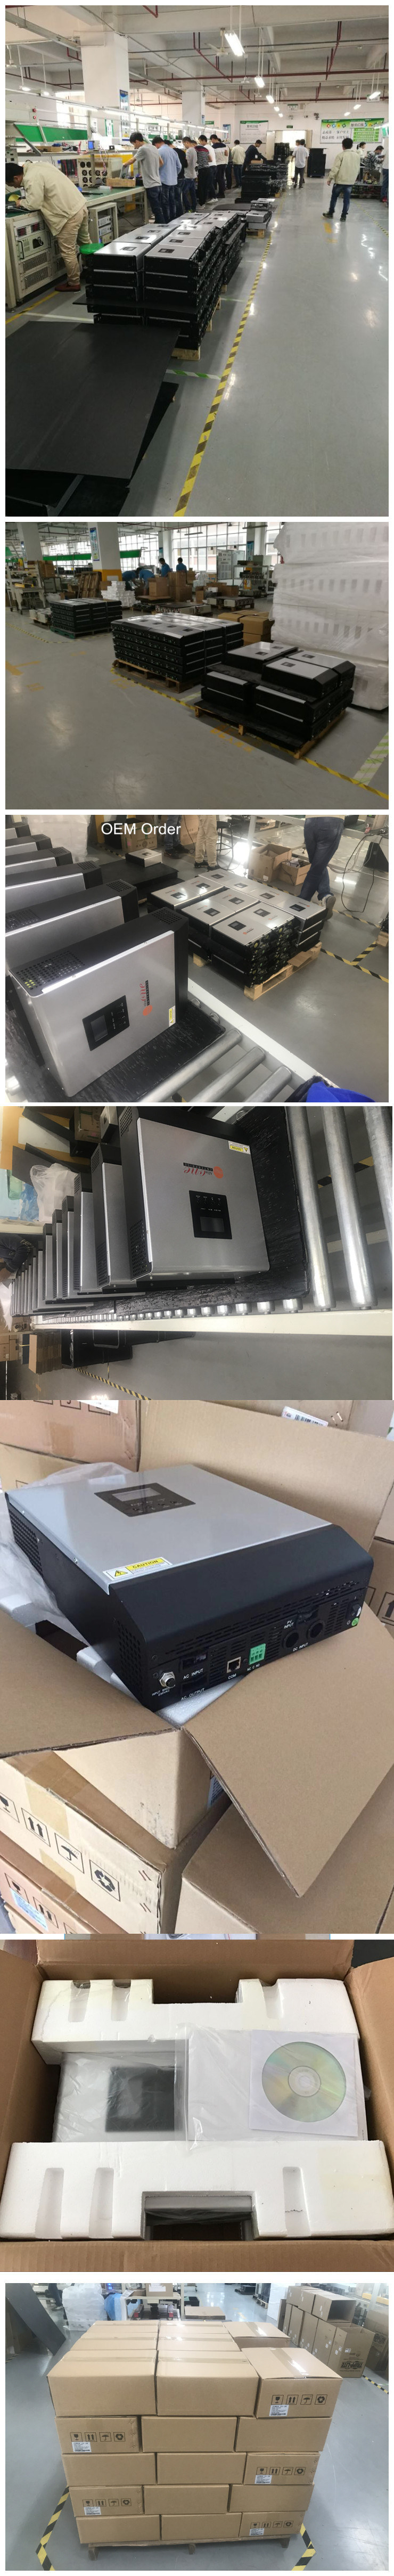 5kVA PWM Hybrid Solar Inverter with Parallel Kits (5kVA 4850)